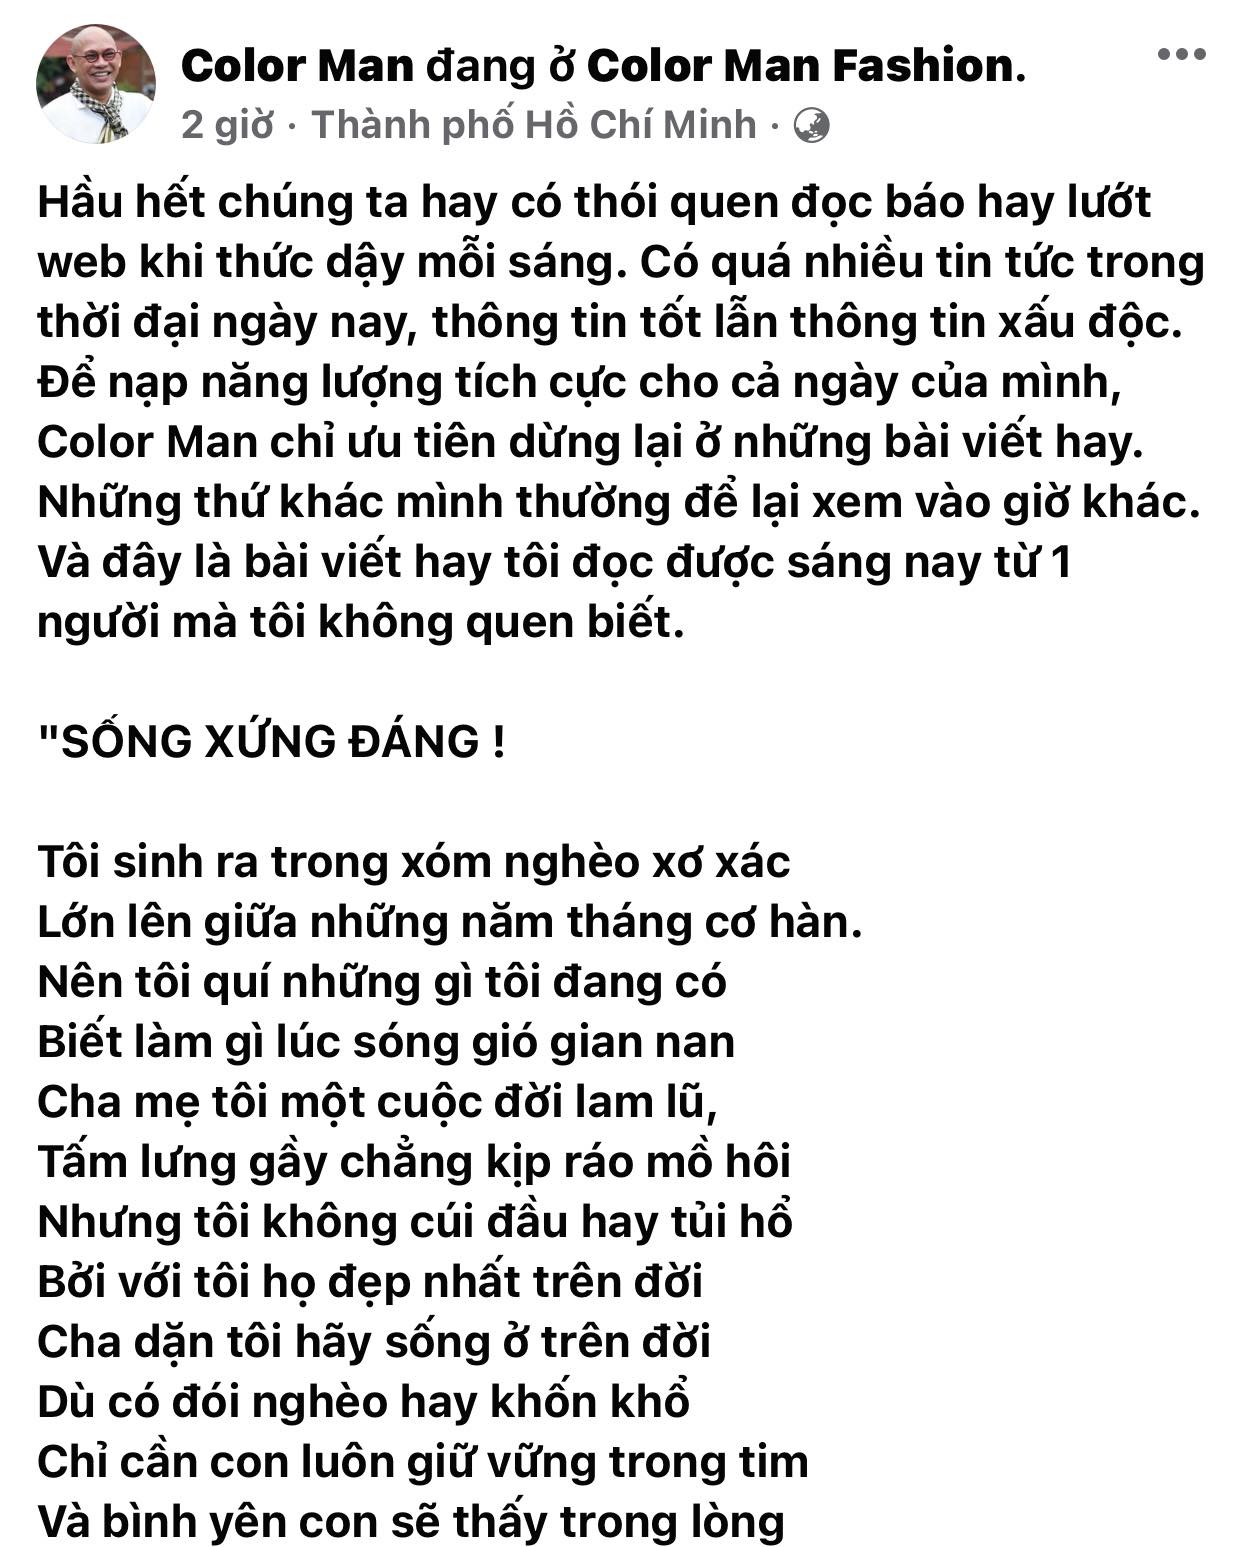 Phna-ung-khong-ngo-cua-ong-trum-showbiz-sau-khi-bi-ba-phuong-hang-to-lam-tu-ong-co-hanh-vi-dat-gai